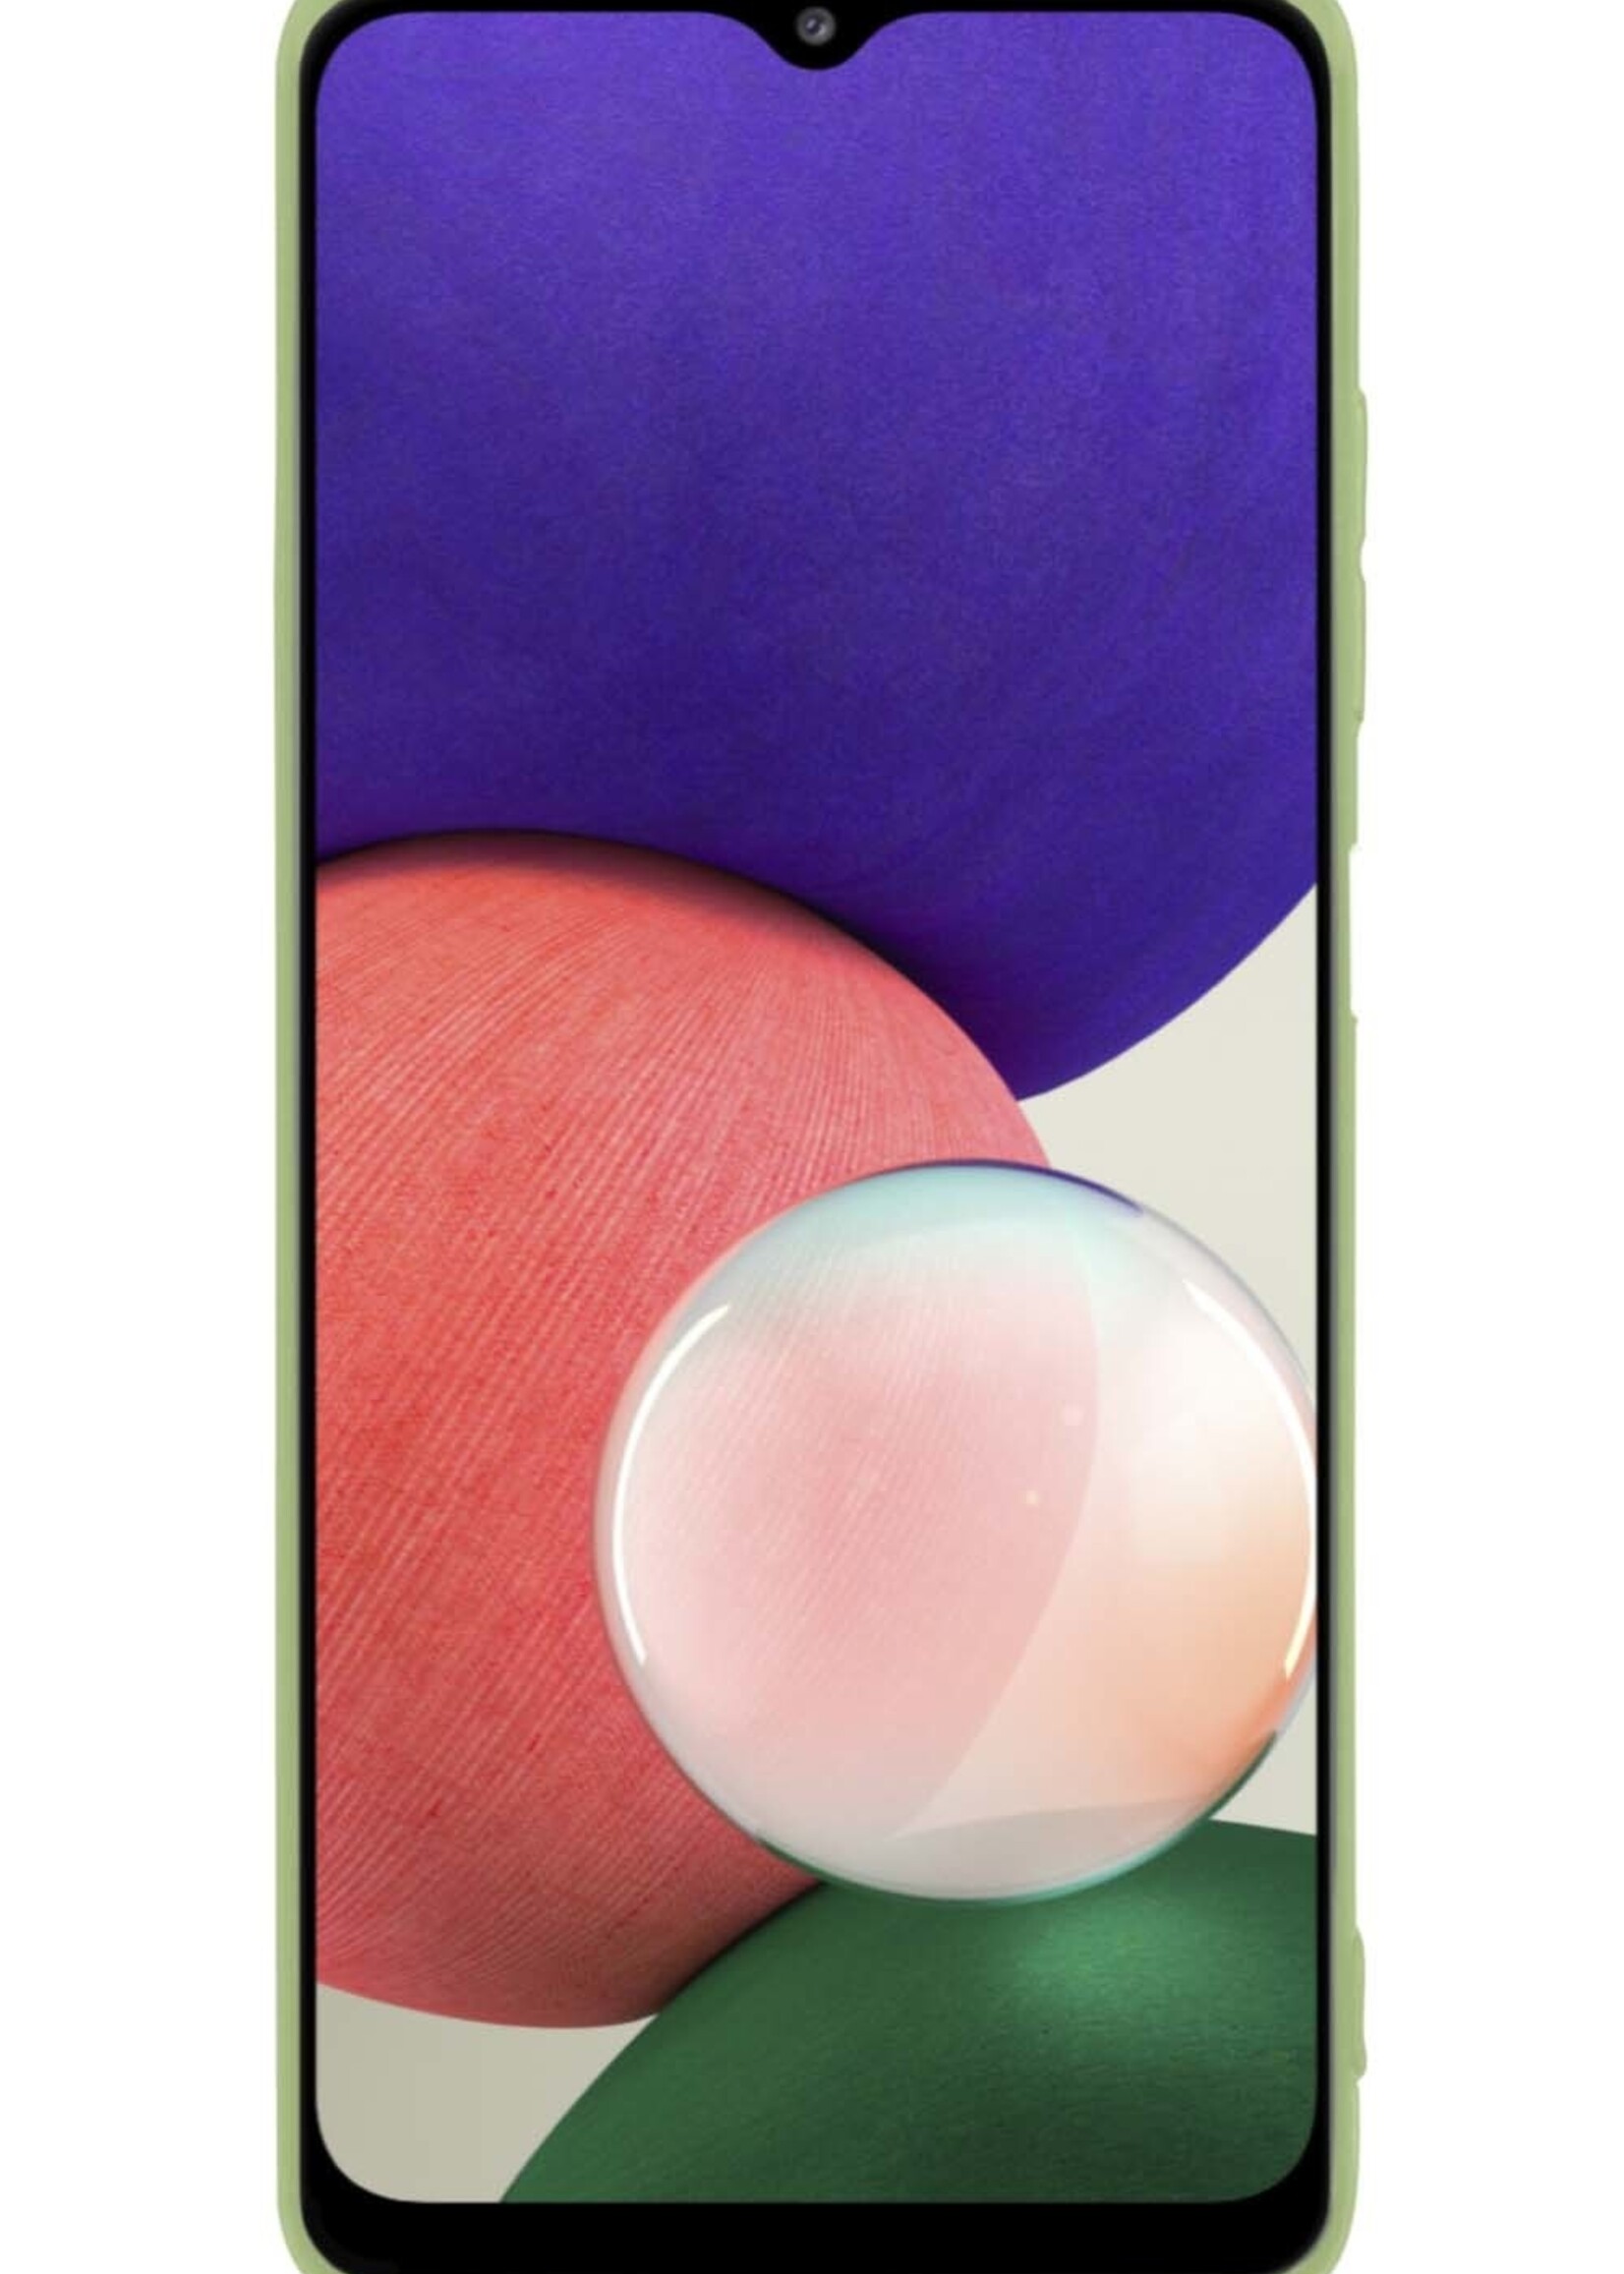 BTH Hoesje Geschikt voor Samsung M22 Hoesje Siliconen Case Hoes - Hoes Geschikt voor Samsung Galaxy M22 Hoes Cover Case - Groen - 2 PACK